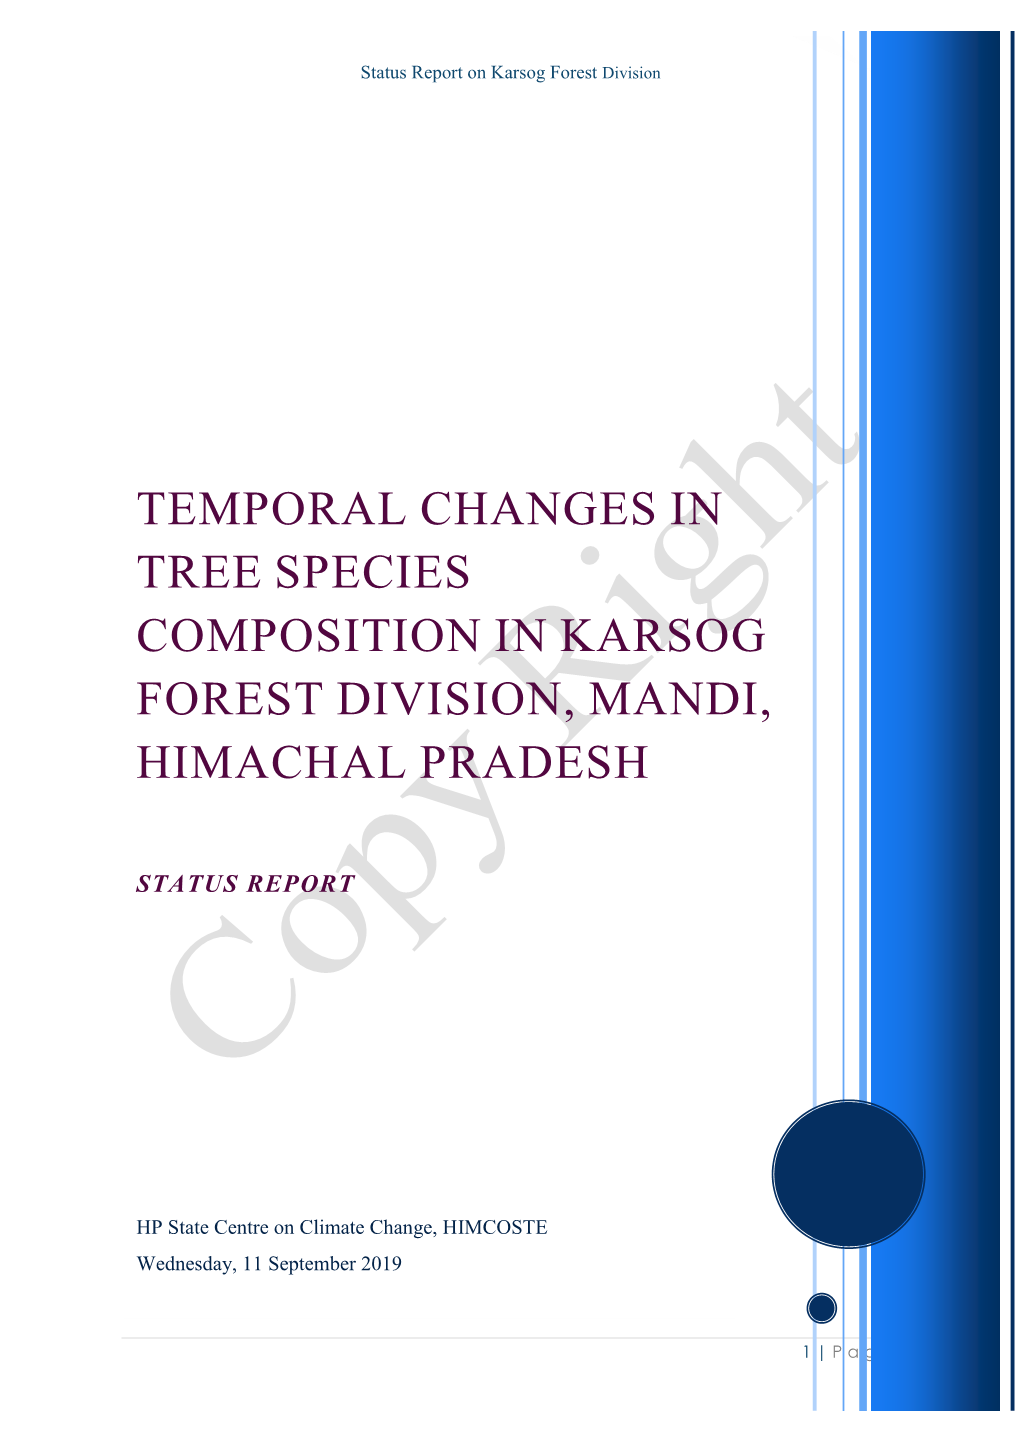 Karsog Forest Division, Mandi, Himachal Pradesh